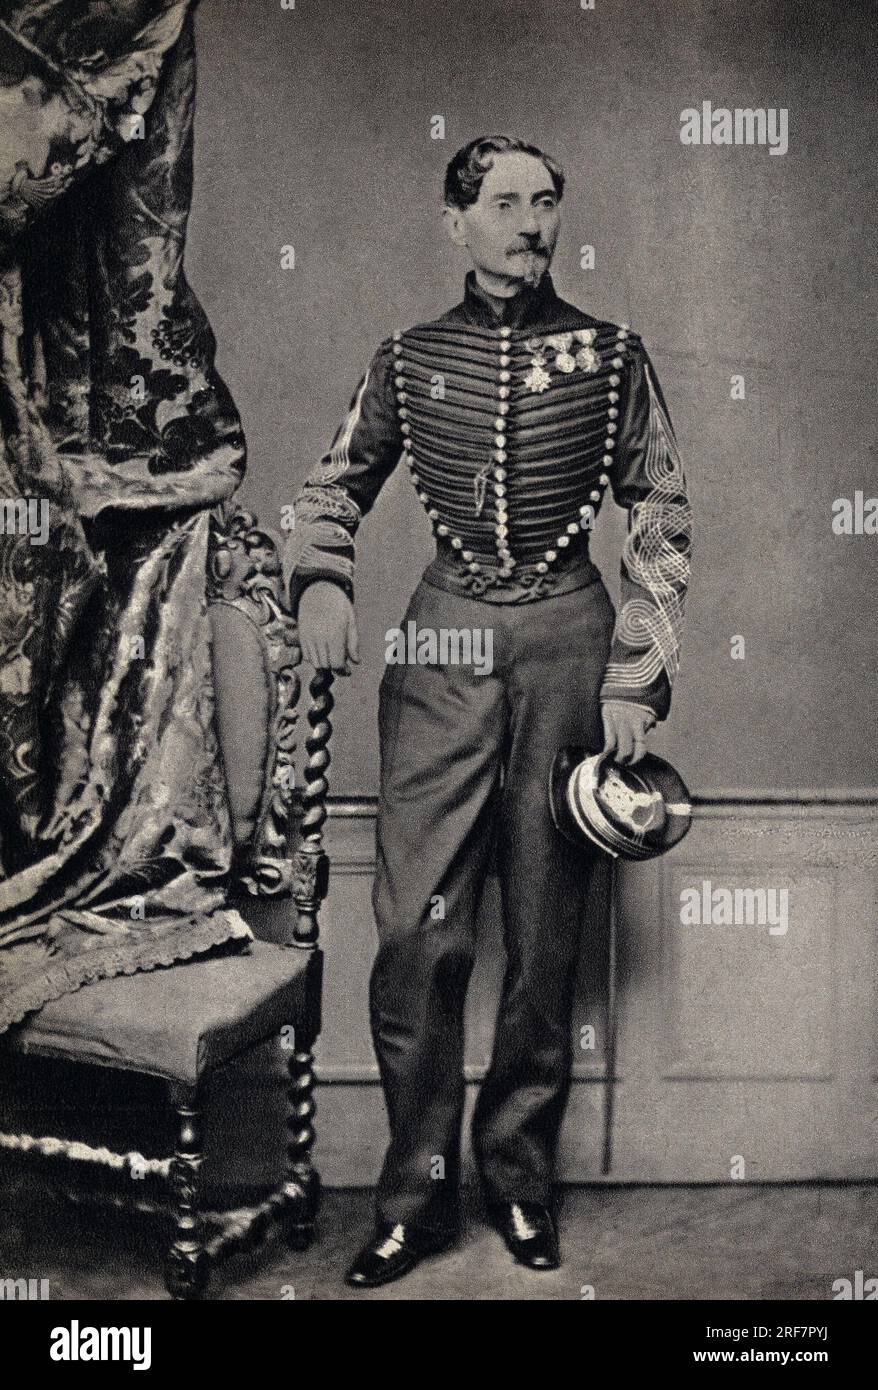 Portrait d'un Commandant de l'Armee Francaise. Fotografie, FIN 19eme Siecle, Paris. Coll. Selva. Stockfoto